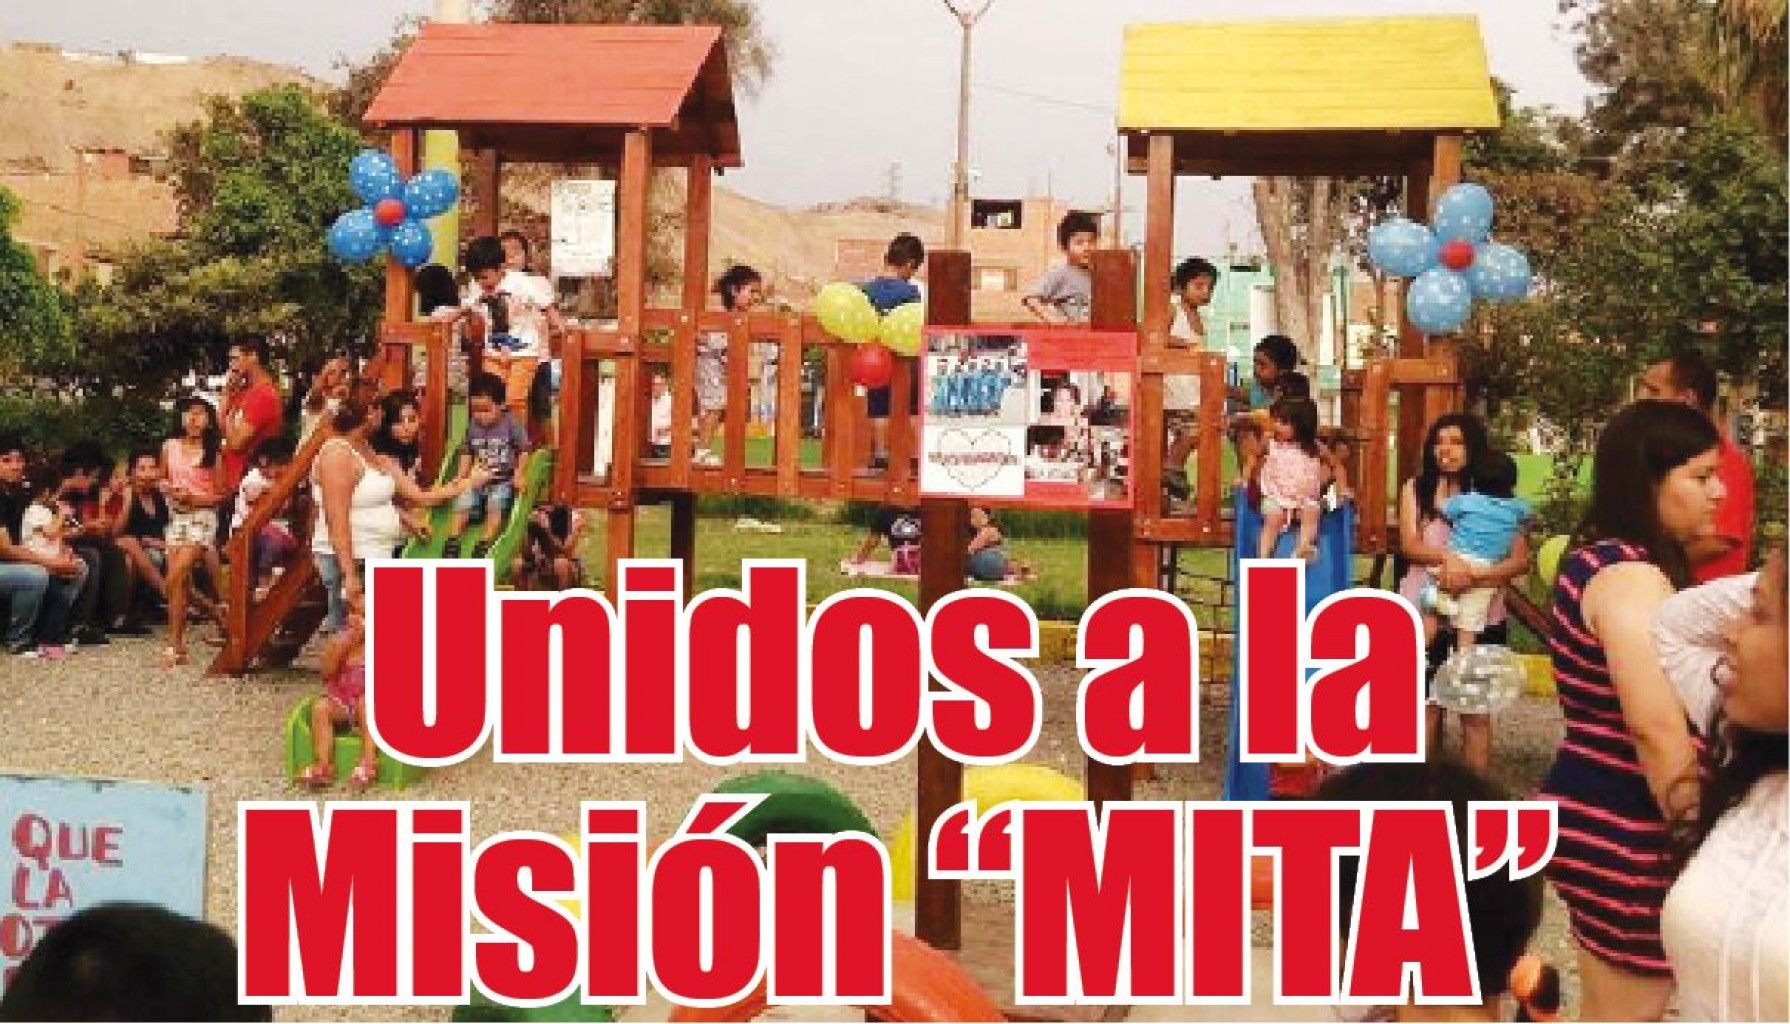 Unidos a la Misión “MITA”